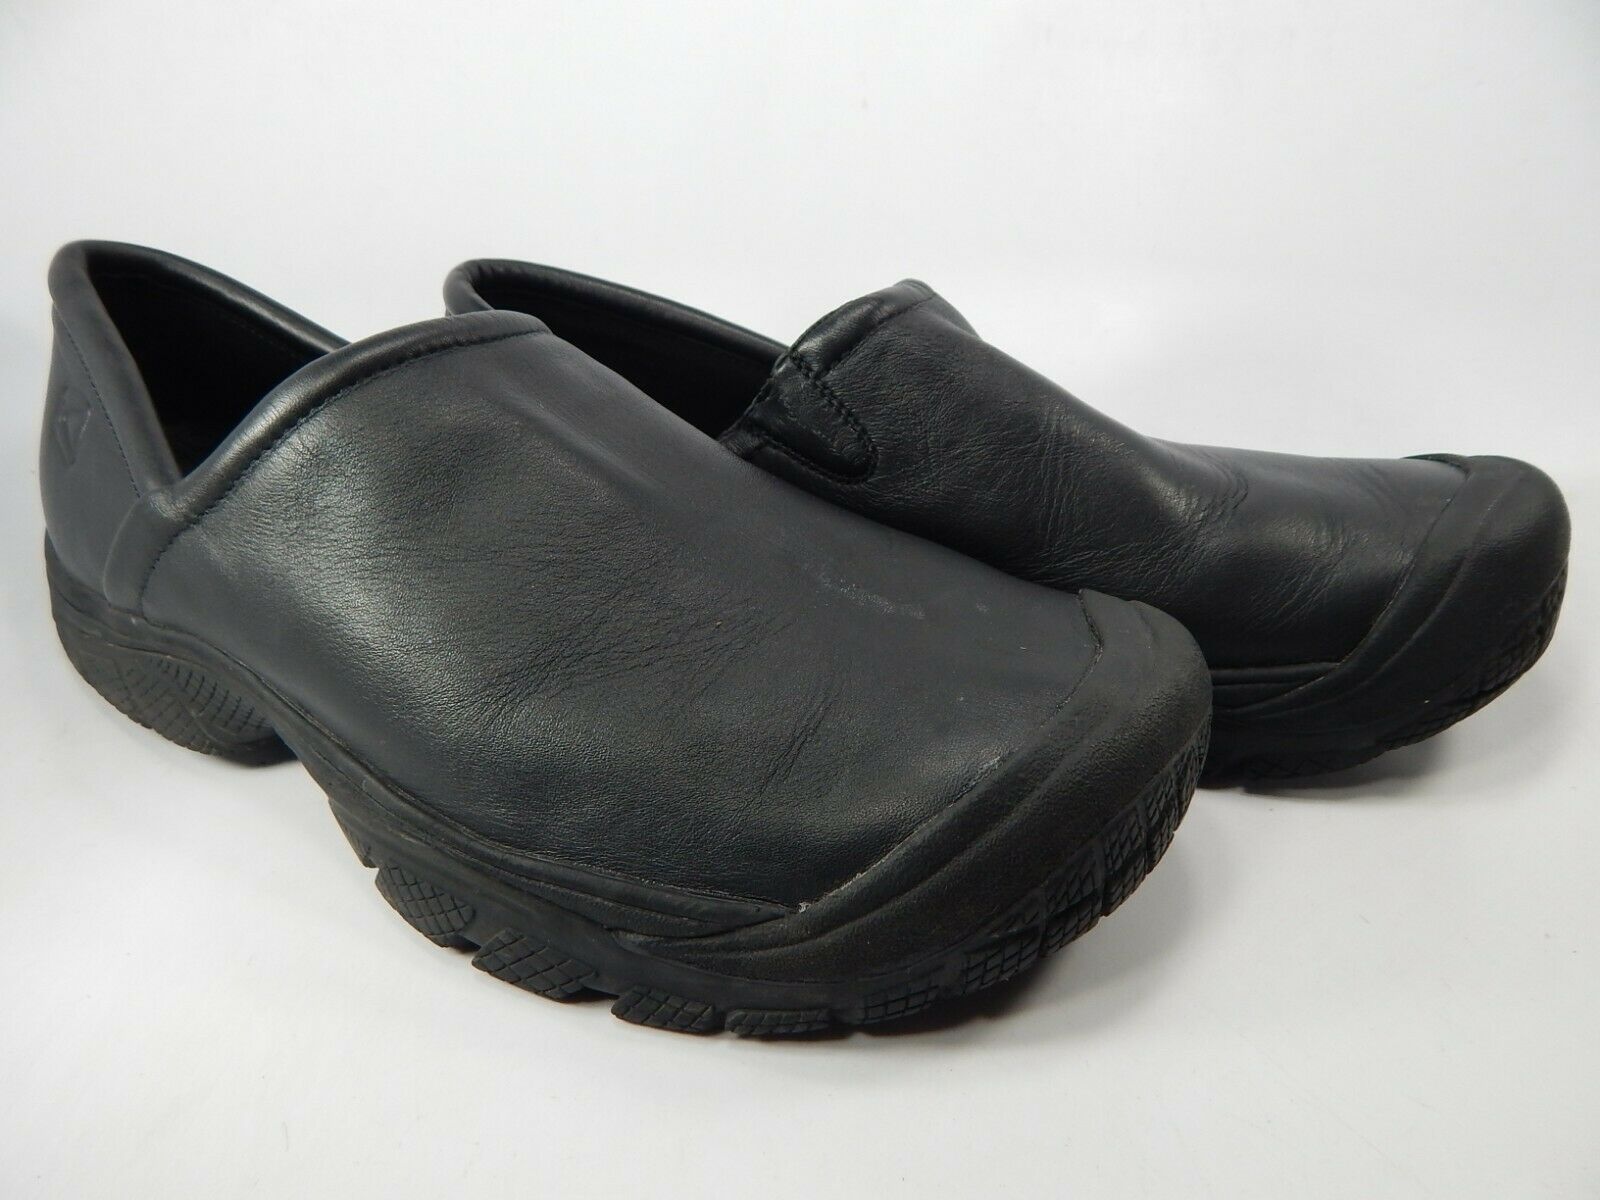 Keen PTC Slip On II Size 13 M (D) EU 47 Men's Soft Toe Work Shoes Black ...